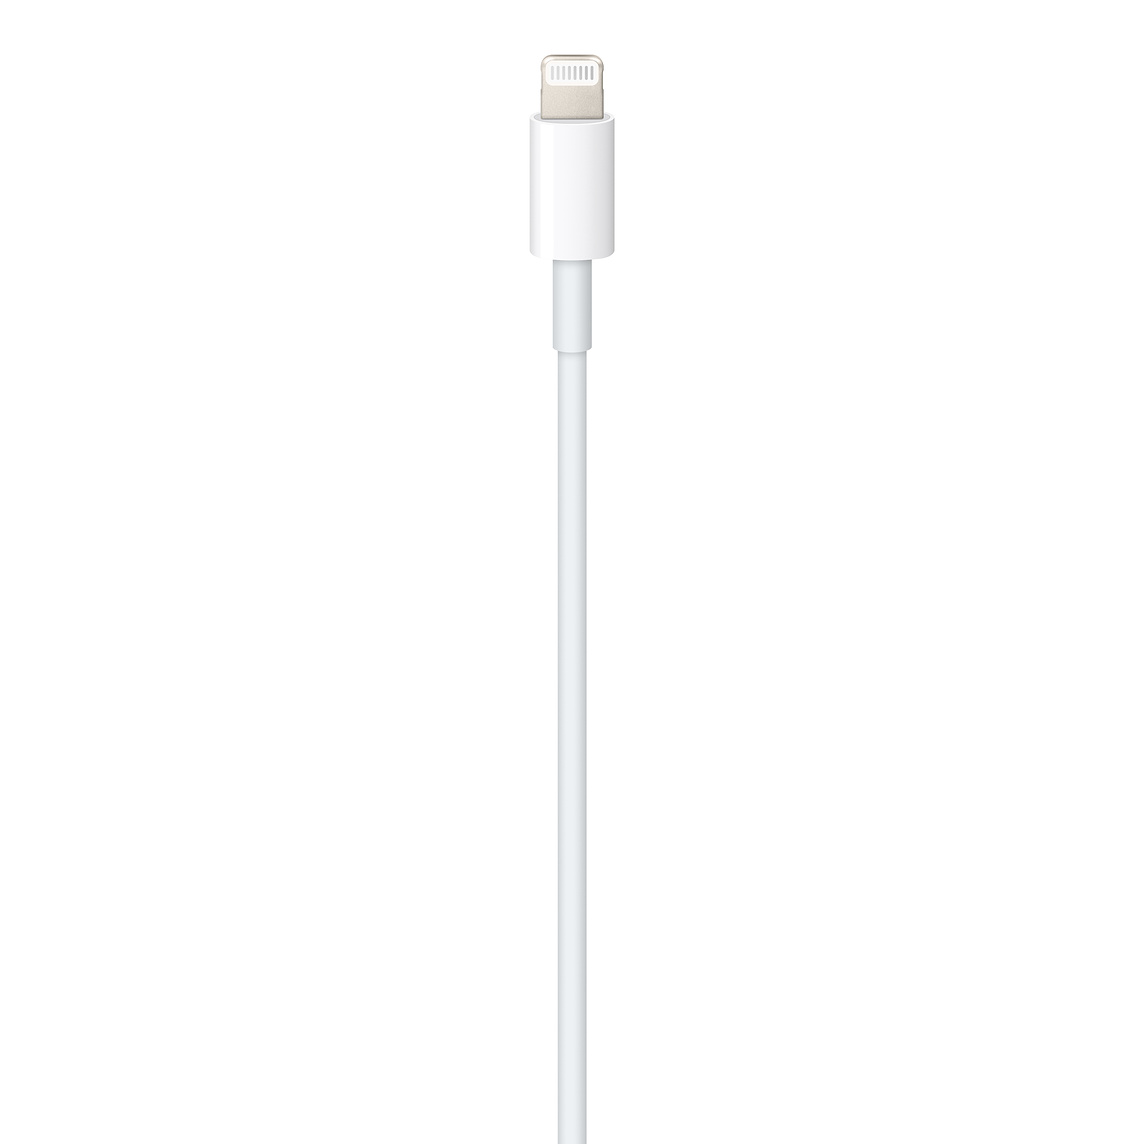 Cáp Apple USB-C to Lightning Cable (1m) - chính hãng